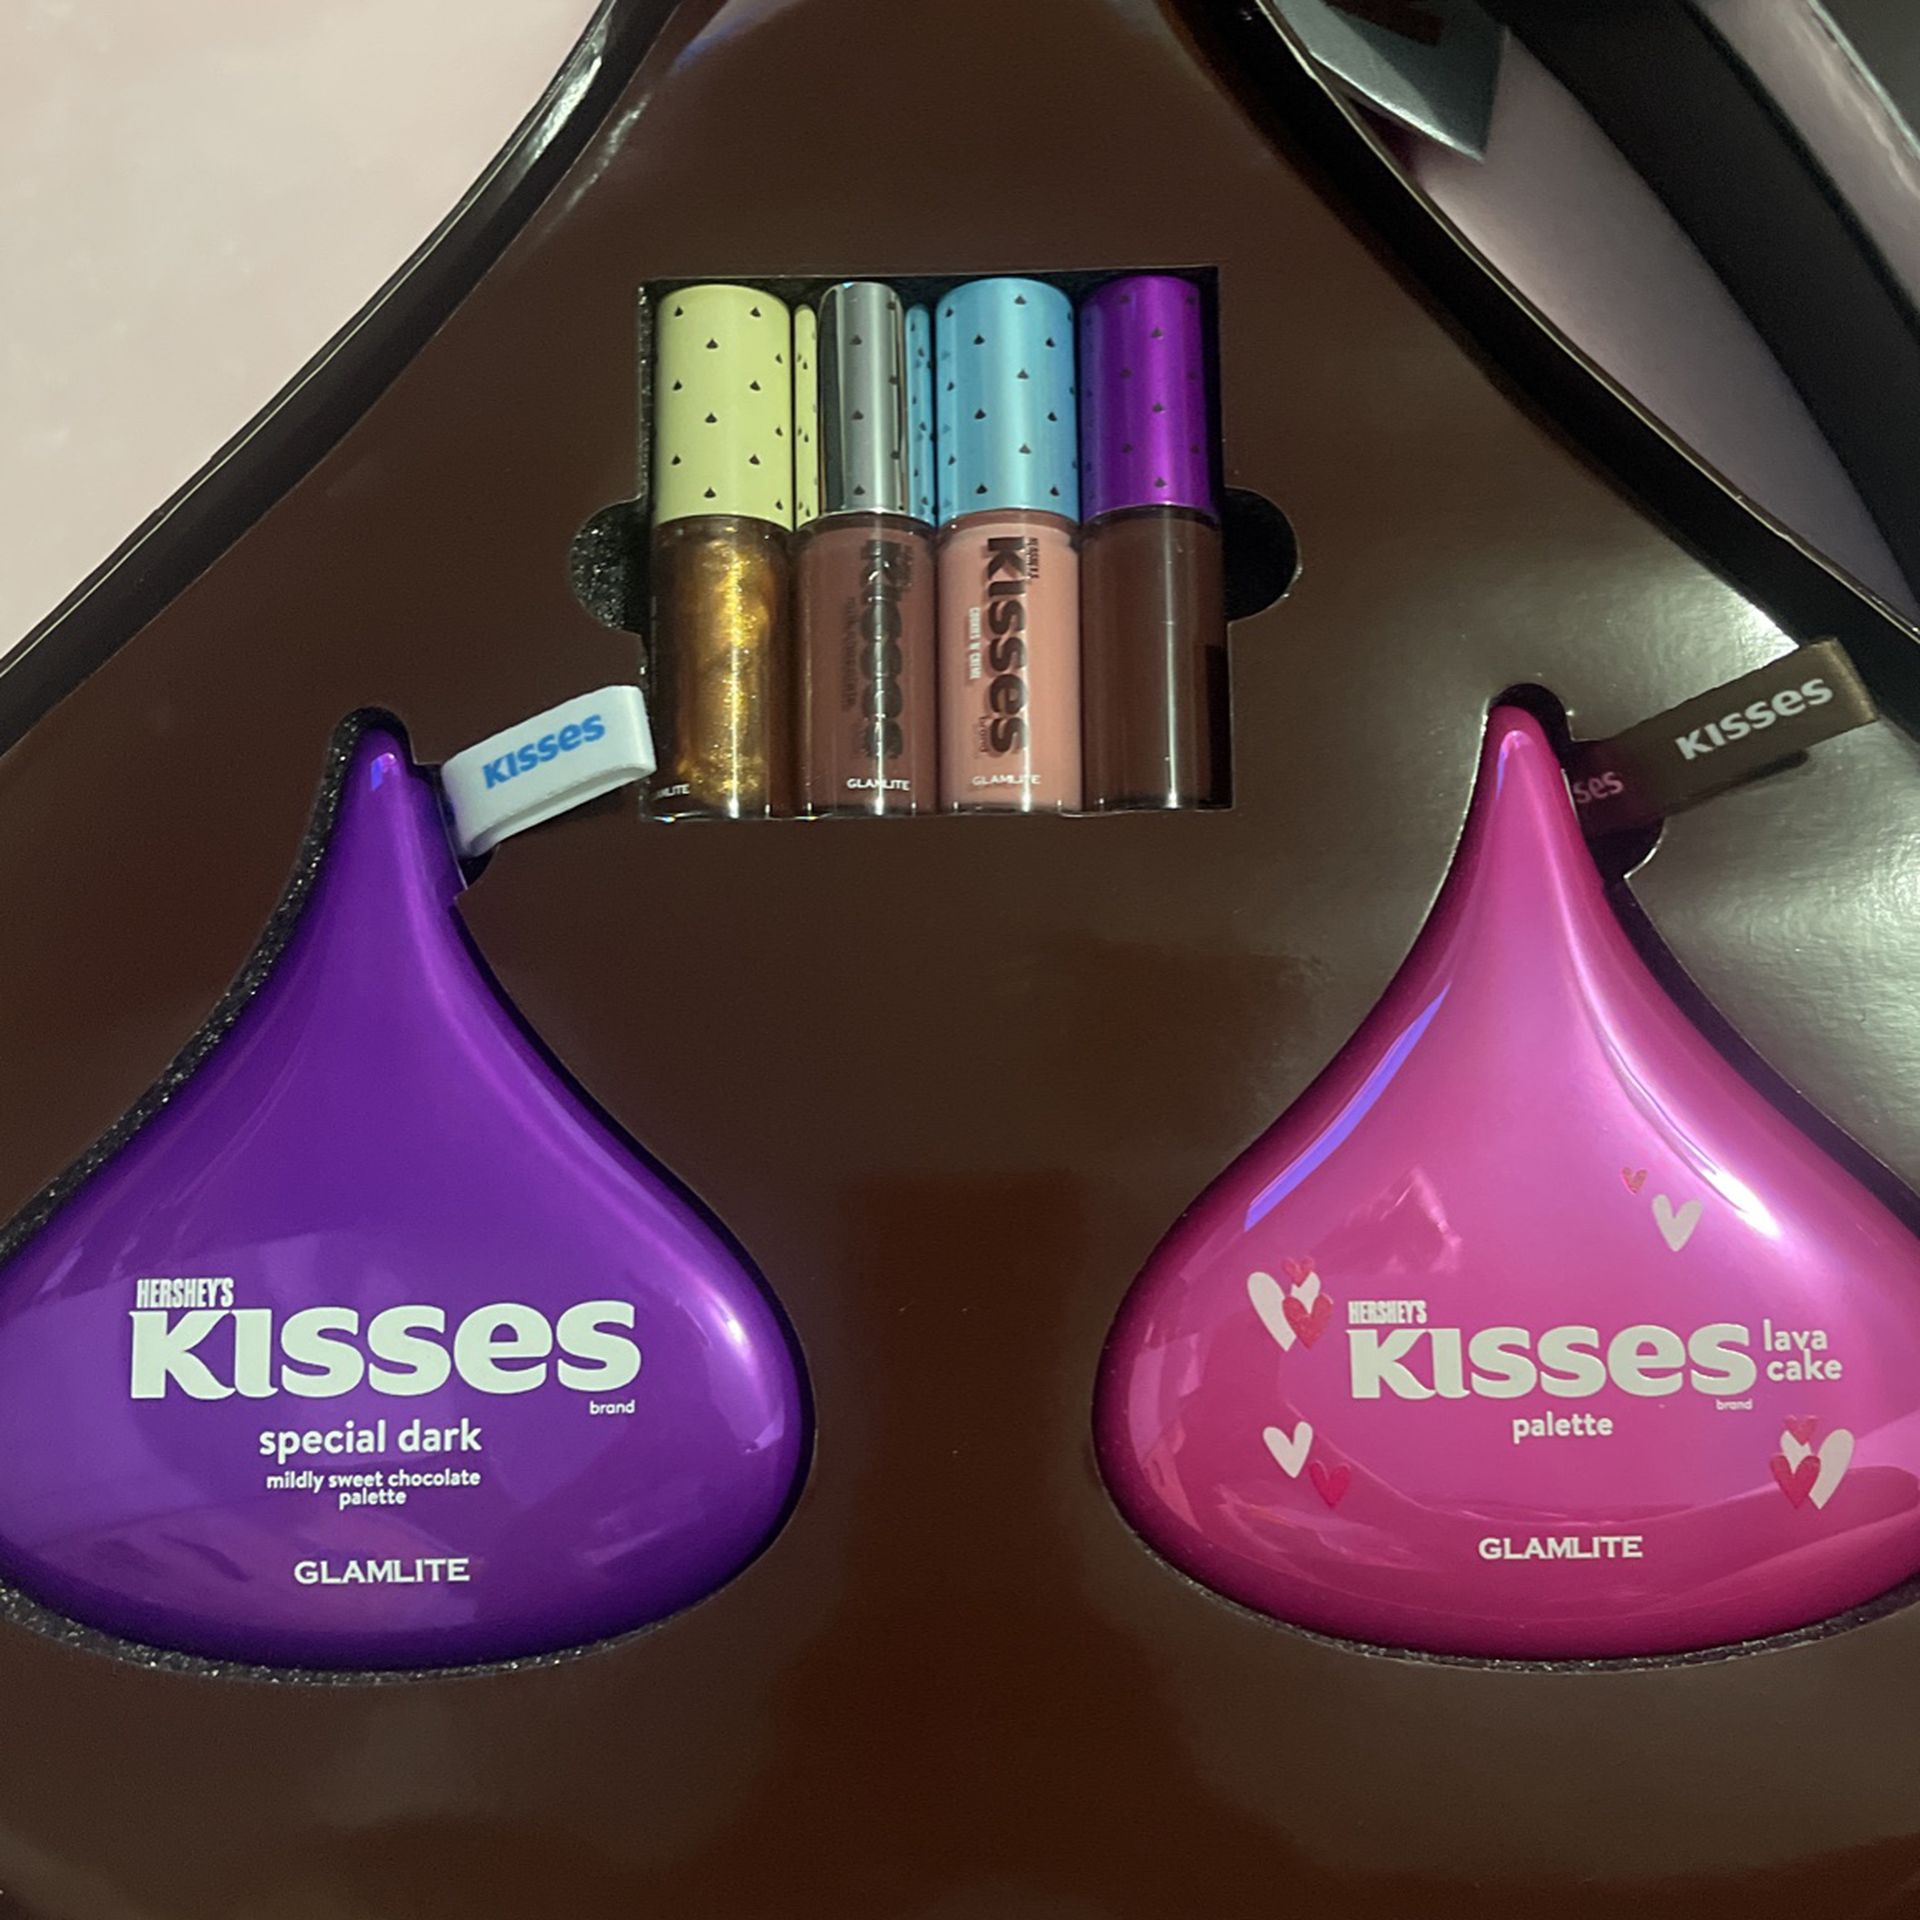 Glamlite Hershey Kisses Pr Box Full Collection 